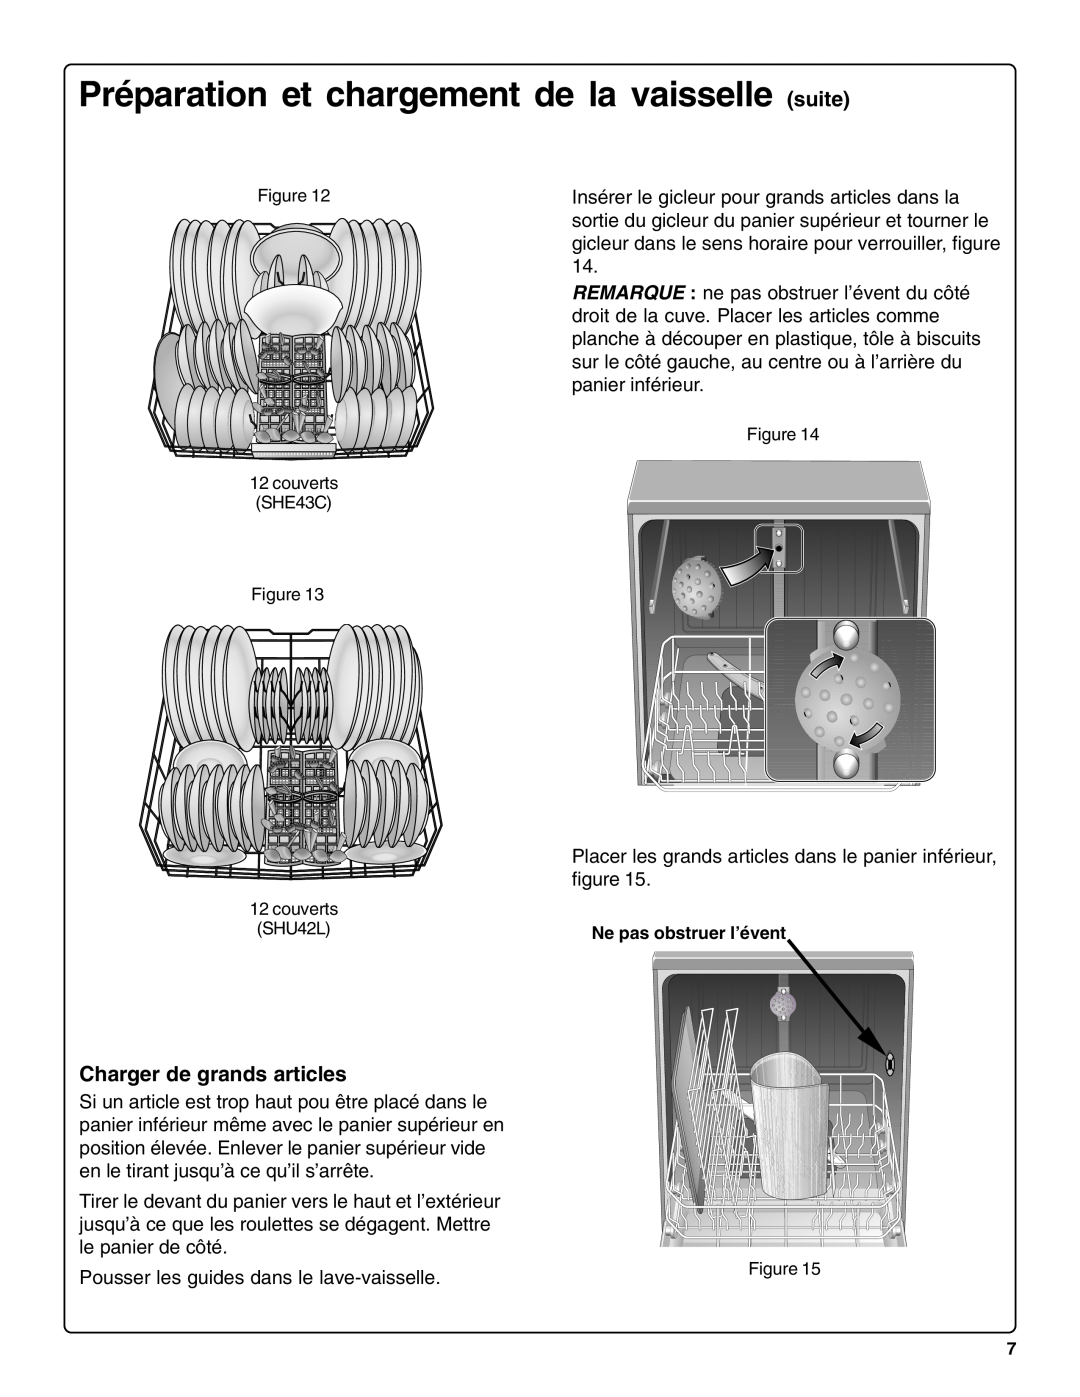 Bosch Appliances sHe43C Charger de grands articles, Préparation et chargement de la vaisselle suite 